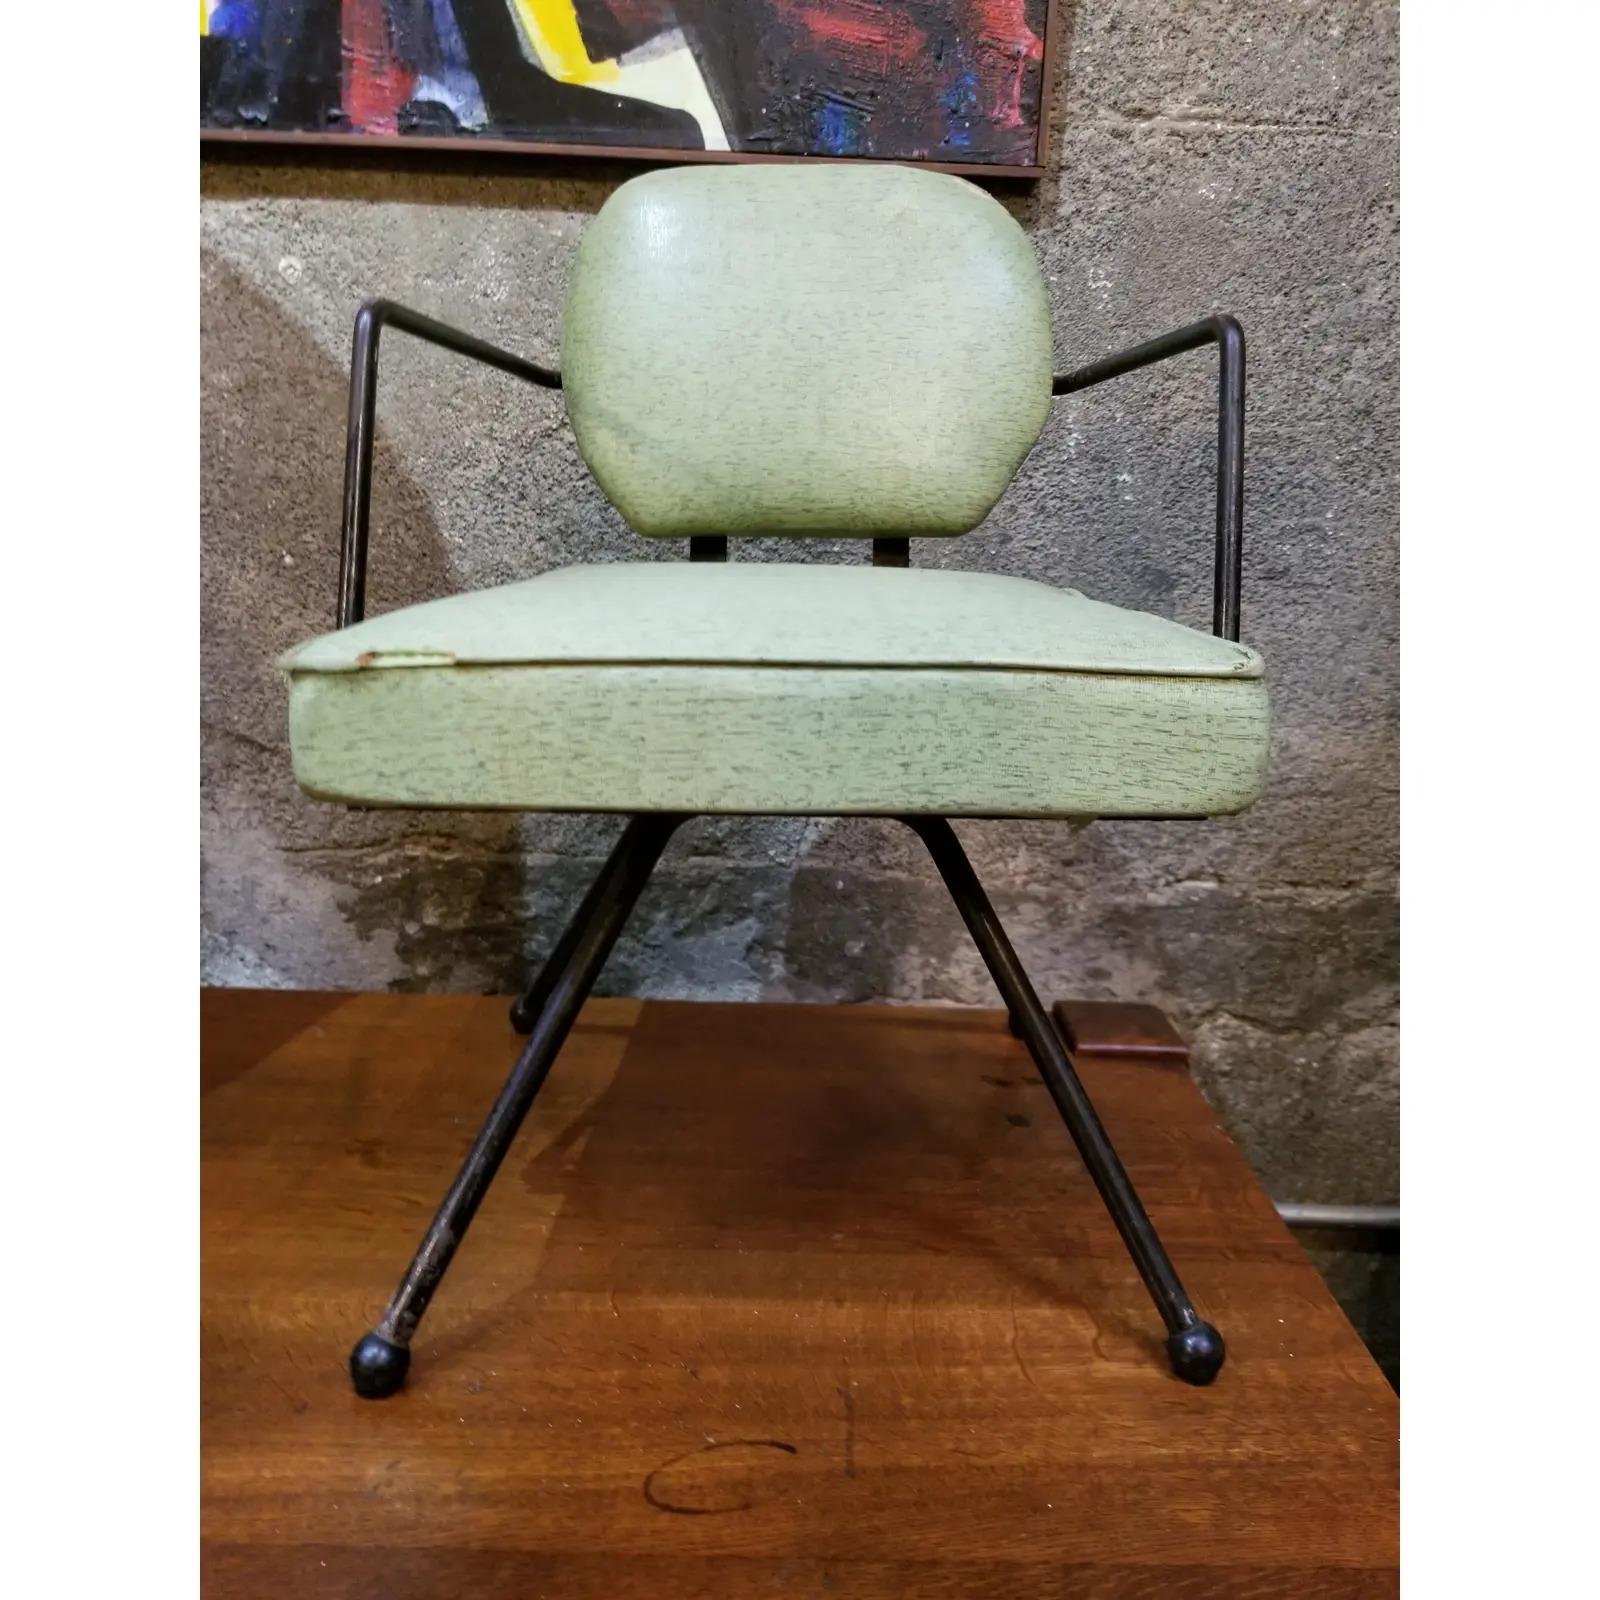 Charmante chaise longue pivotante pour enfant en fer et vinyle, vers les années 1950.